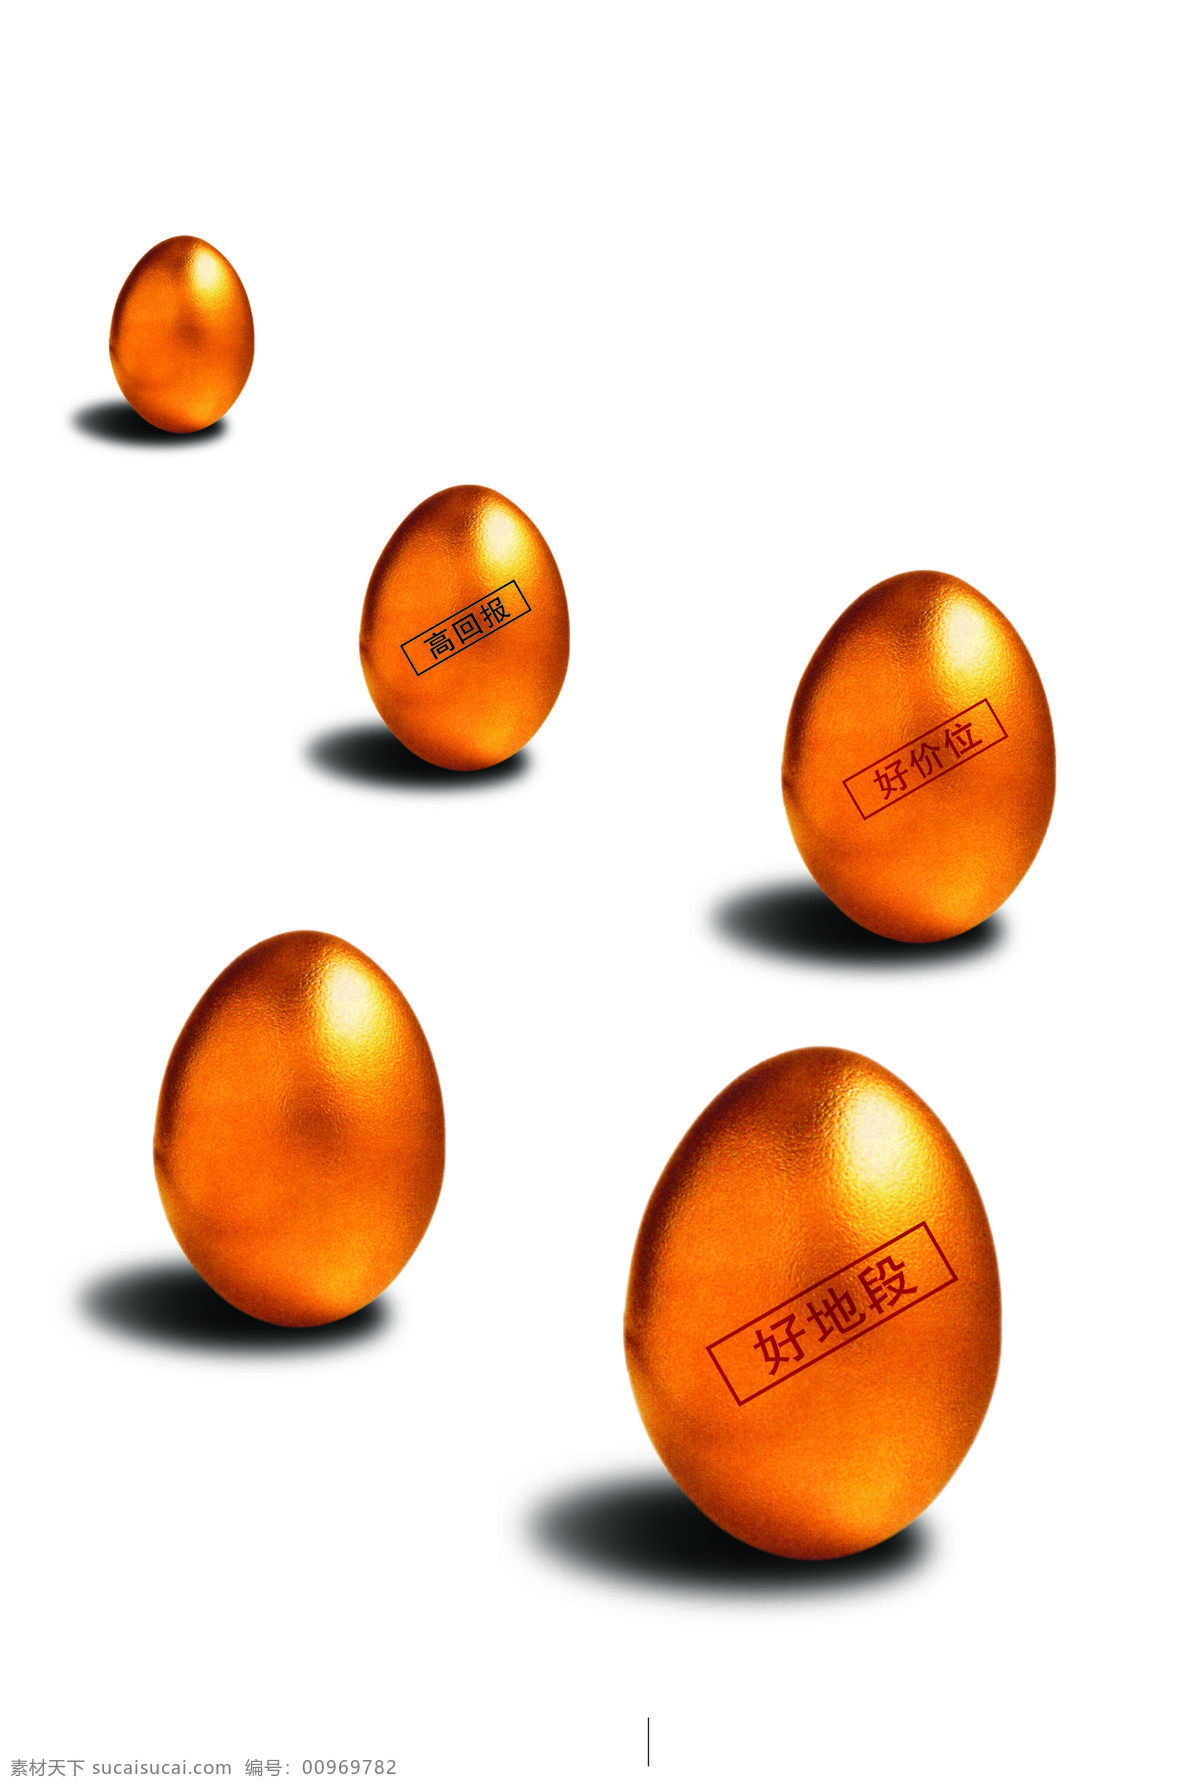 金 蛋 金蛋 设计图库 金蛋设计素材 金蛋模板下载 五个金蛋 好地段 好价位 高回报 psd源文件